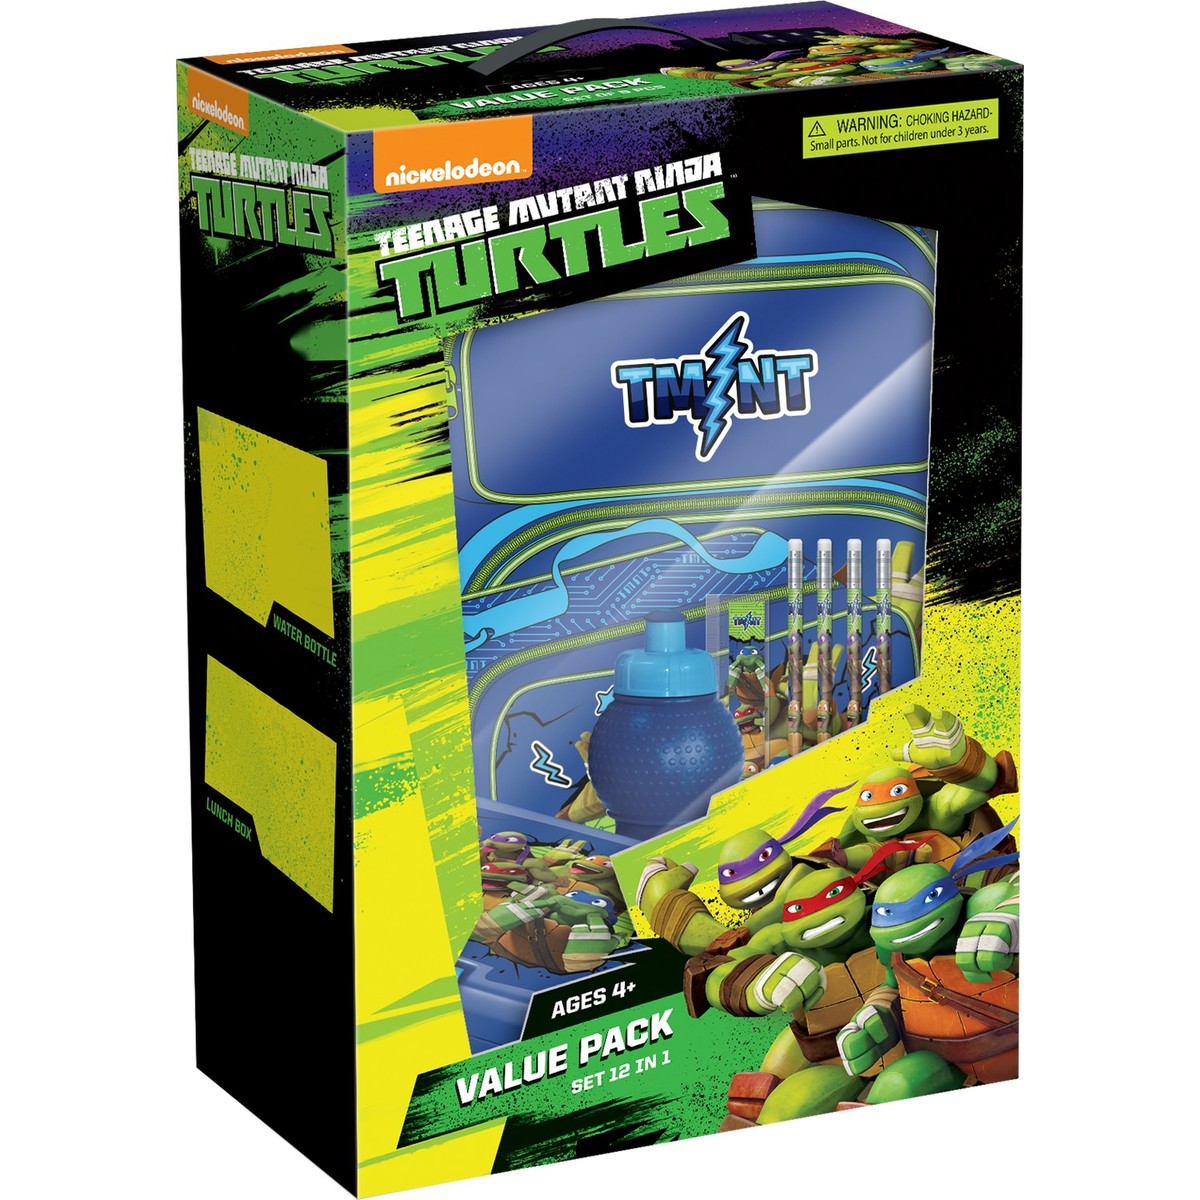 Teenage Mutant Ninja Turtles School Trolley Value Pack Set 12in1 FK-100393 18inch